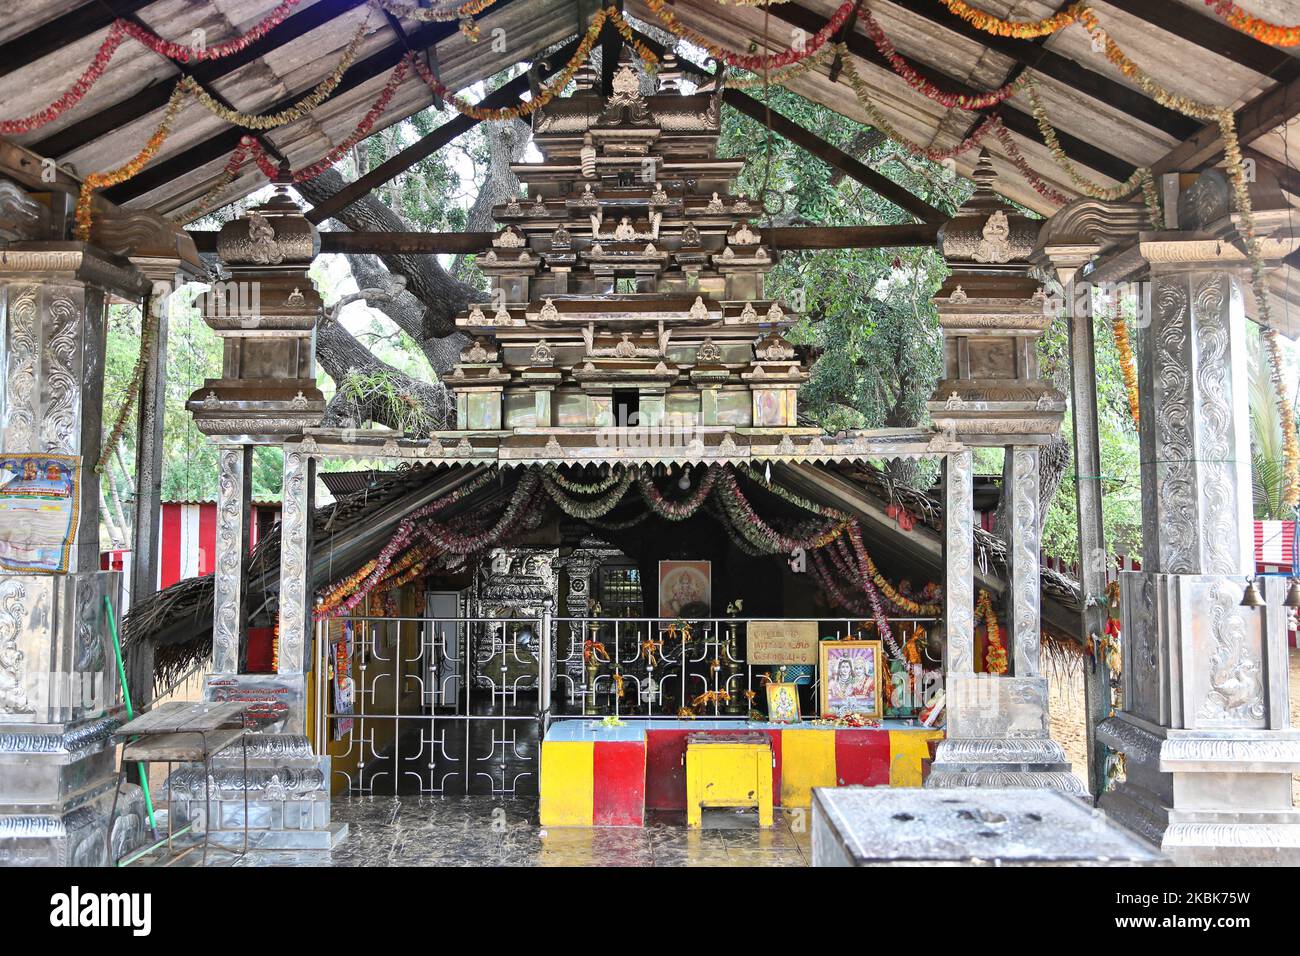 Murikandy Pillayar Hindu-Tempel (Murukandy-Tempel) in Jaffna, Sri Lanka. Dieser berühmte Hindu-Tempel ist Lord Ganesh gewidmet und ist ein Ort, an dem alle Reisenden und diejenigen, die vorbeifahren, anhalten, da man glaubt, dass Gott sie während der Reise beschützen und ihnen eine sichere Reise bieten kann, indem er eine Kokosnuss bricht und Gebete in diesem Tempel anrichtet. Dies war die Praxis von undenklichen Zeiten an und wird heute noch von allen verfolgt, die entlang der A-9 Road reisen. (Foto von Creative Touch Imaging Ltd./NurPhoto) Stockfoto